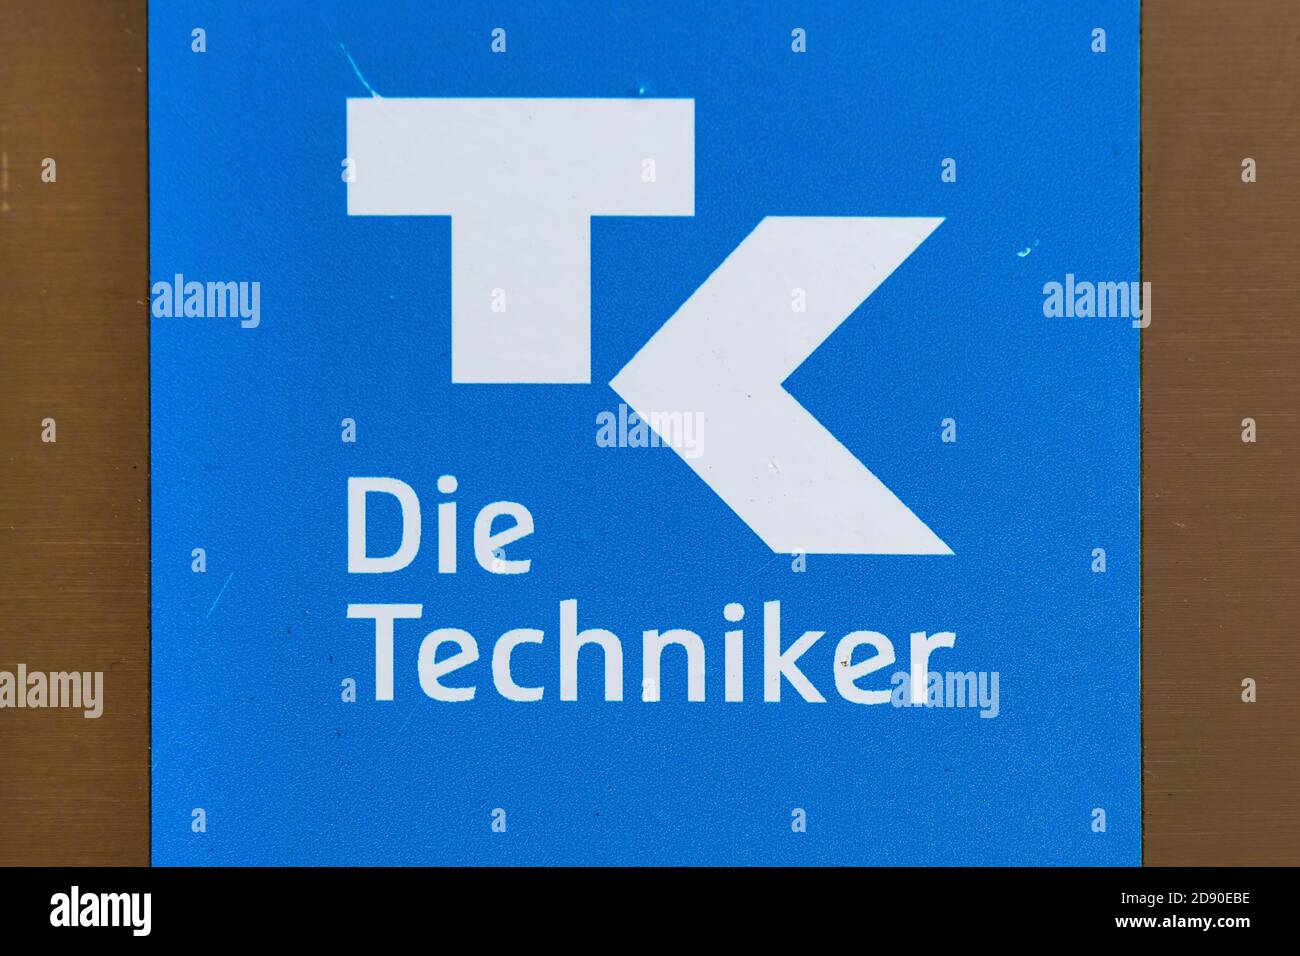 Segno dell'assicurazione sanitaria Techniker Krankenkasse - TK - Die Techniker a Stoccarda, Germania Foto Stock